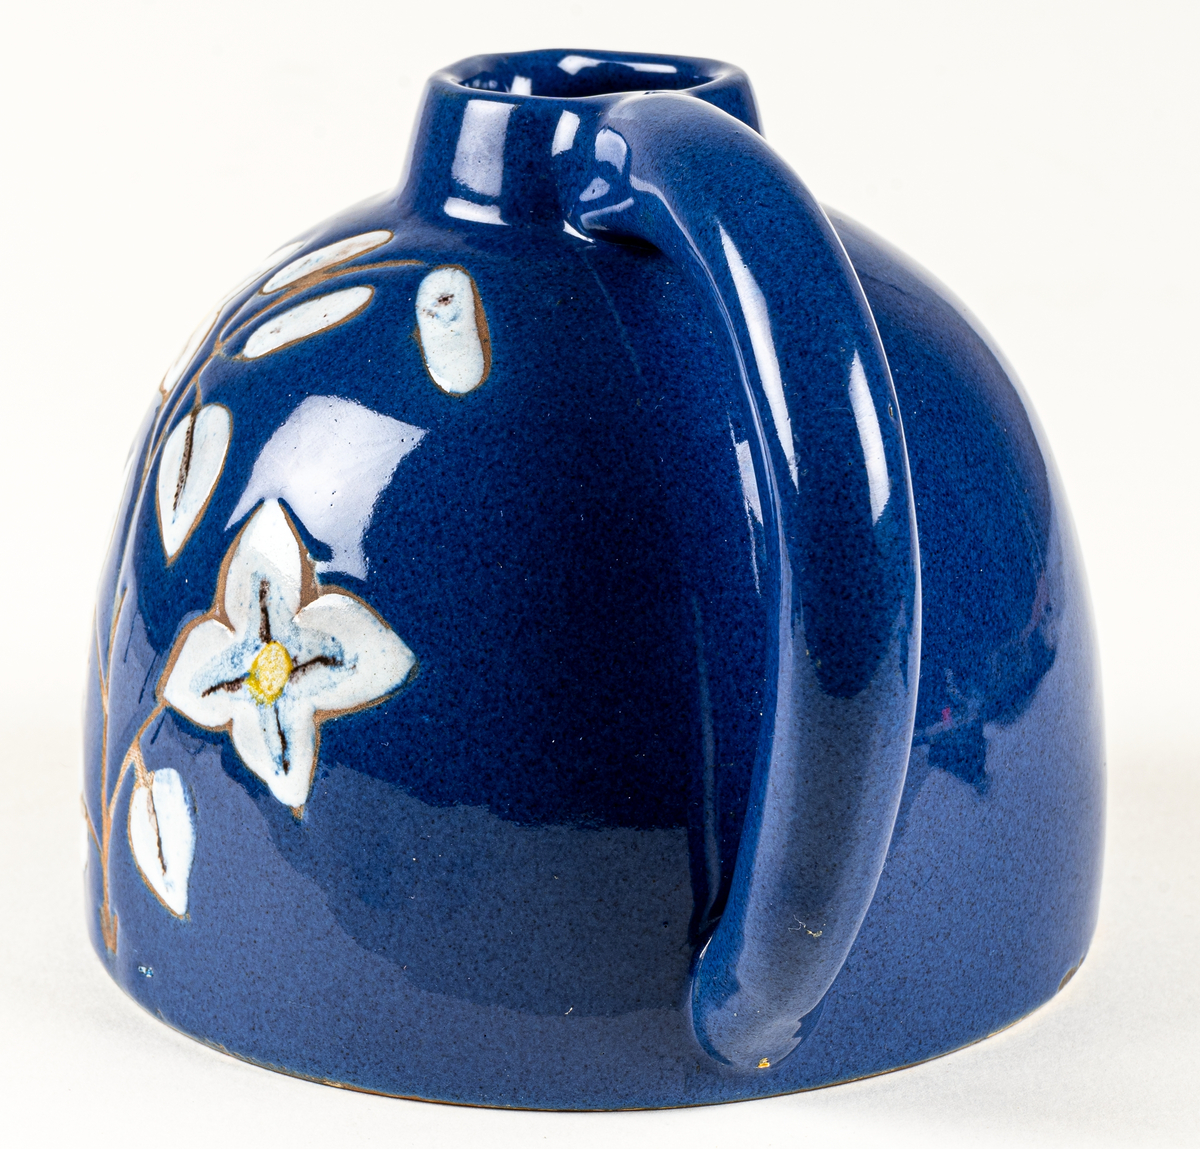 Kanna eller blomkrus i lergods, formgivet av skulptör Maggie Wibom vid hennes företag Stockholms Keramik AB, 1940-talet. Den blå glasyren fick namnet Wibomblå, kannan dekorerad med en kvist vita blommor där kvisten och konturen är oglaserad genom påläggning av vax innan glasyrbränning.